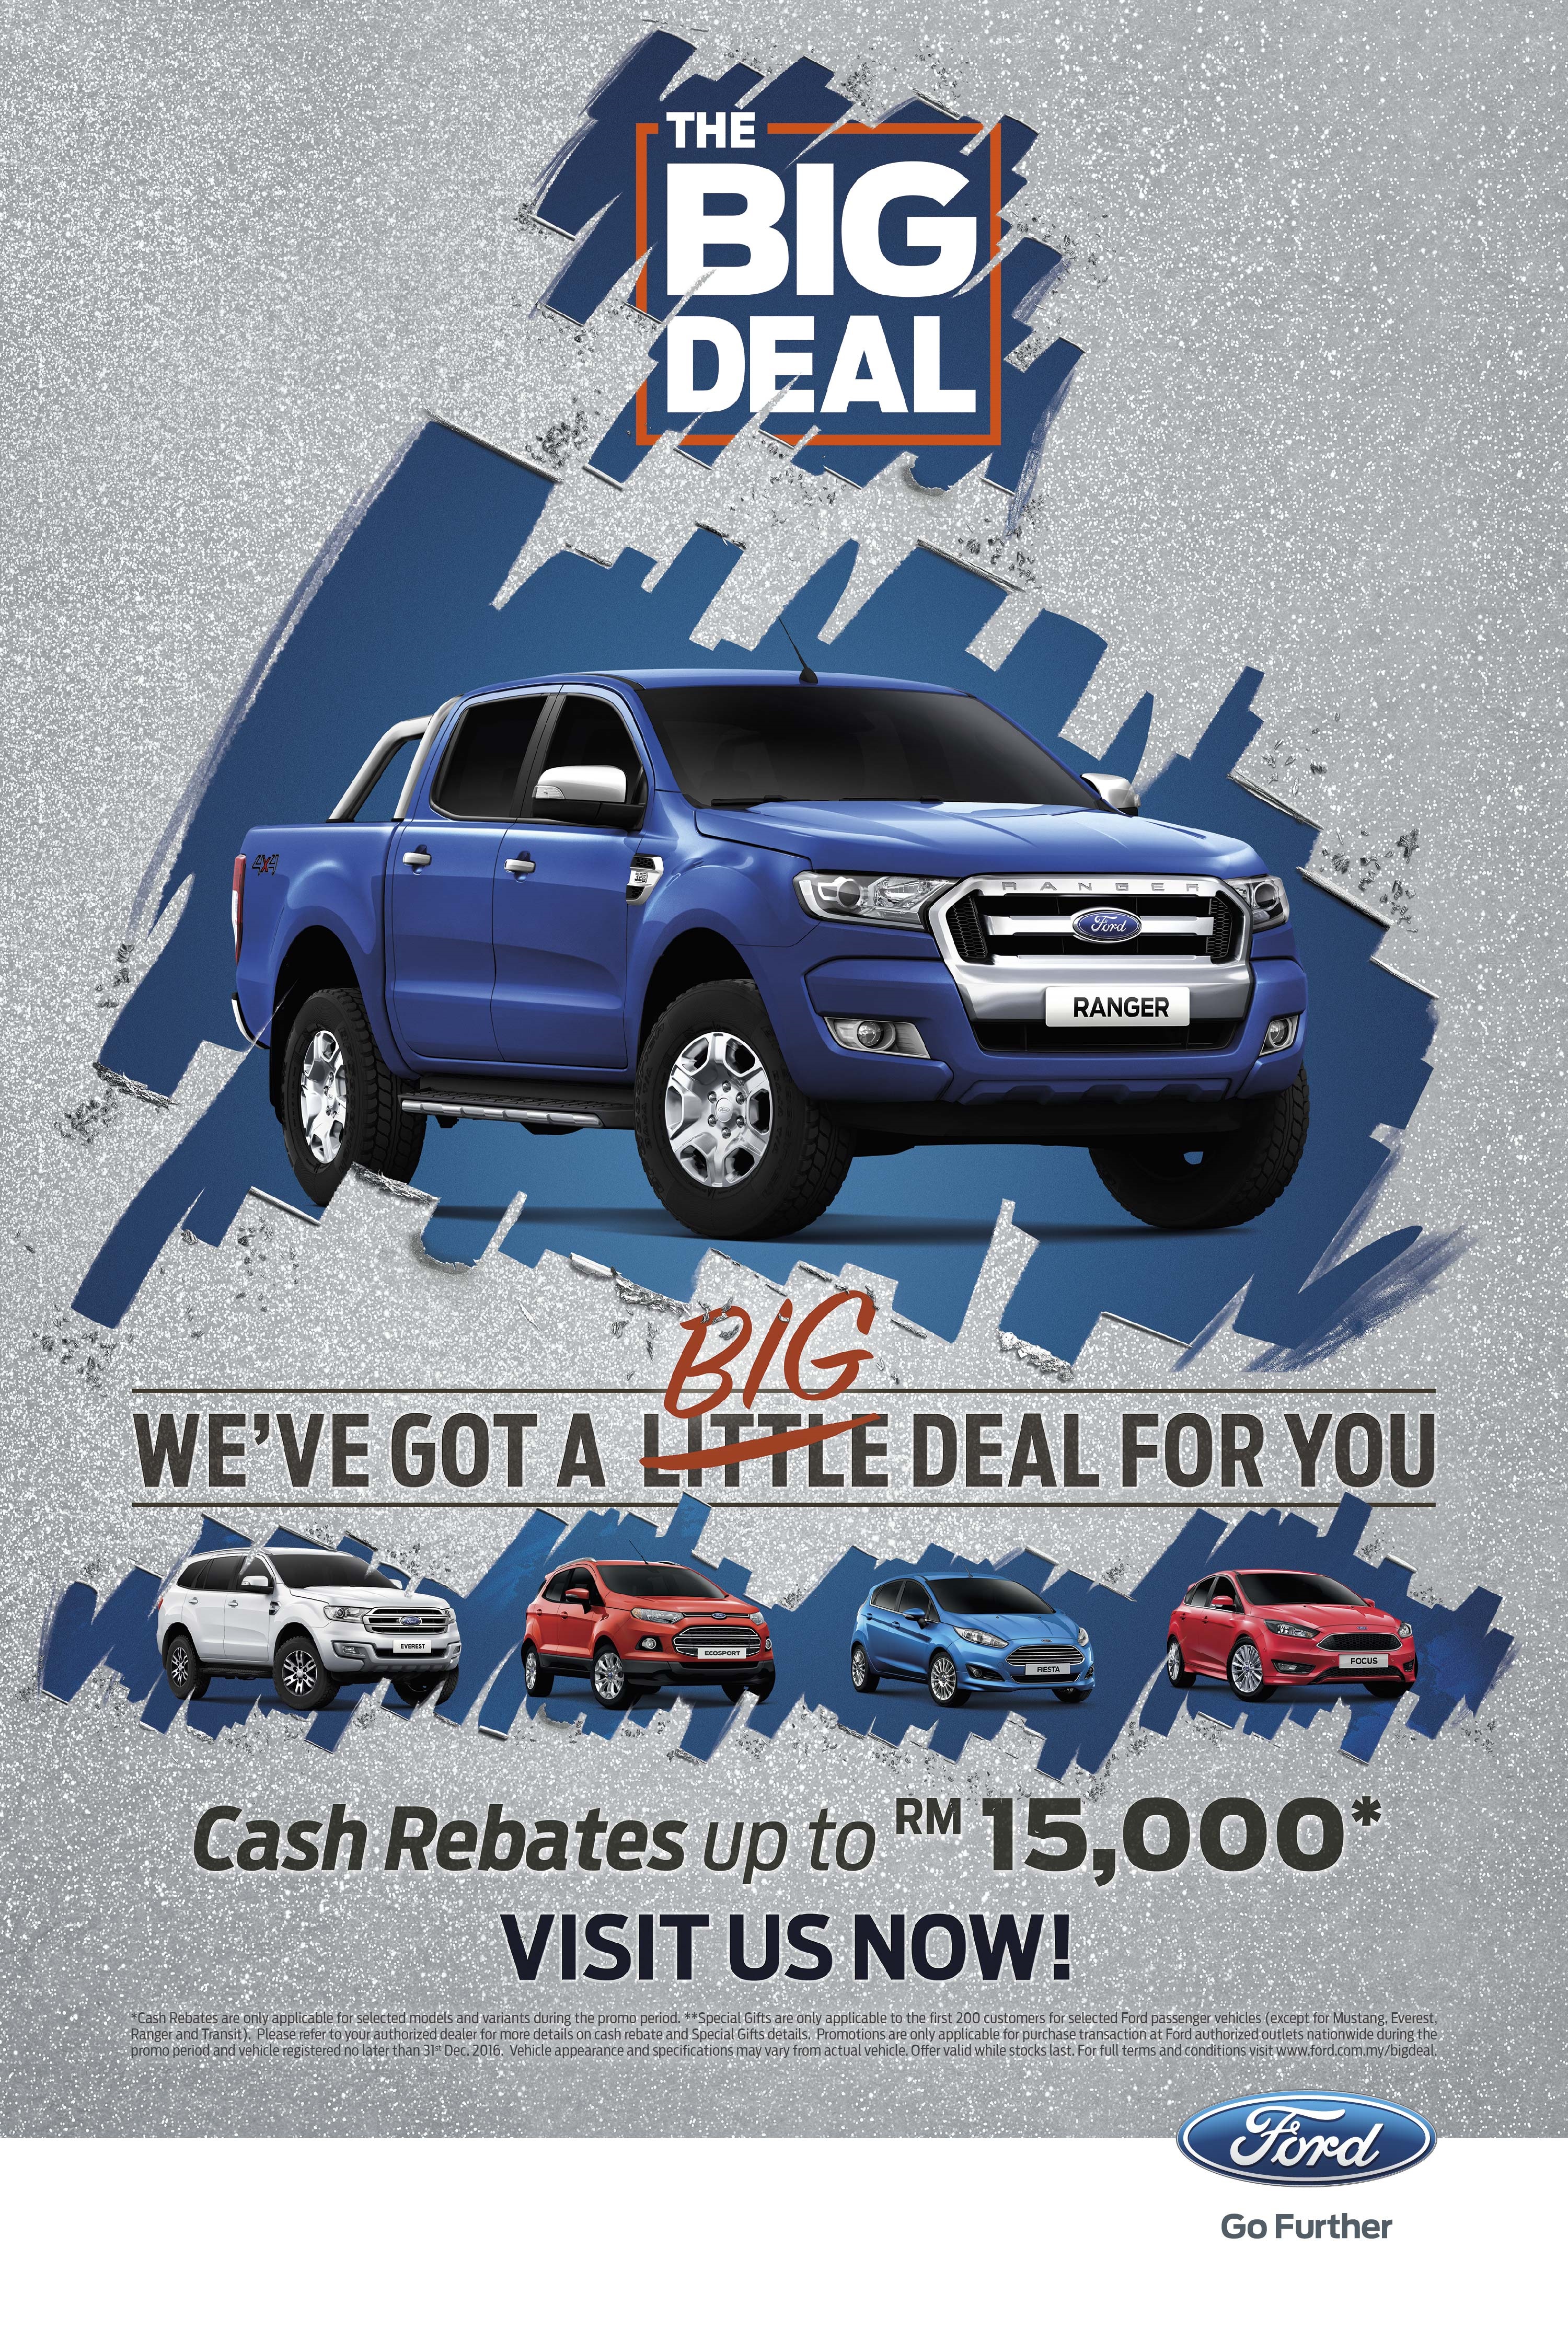 Car Deals With Cash Rebates